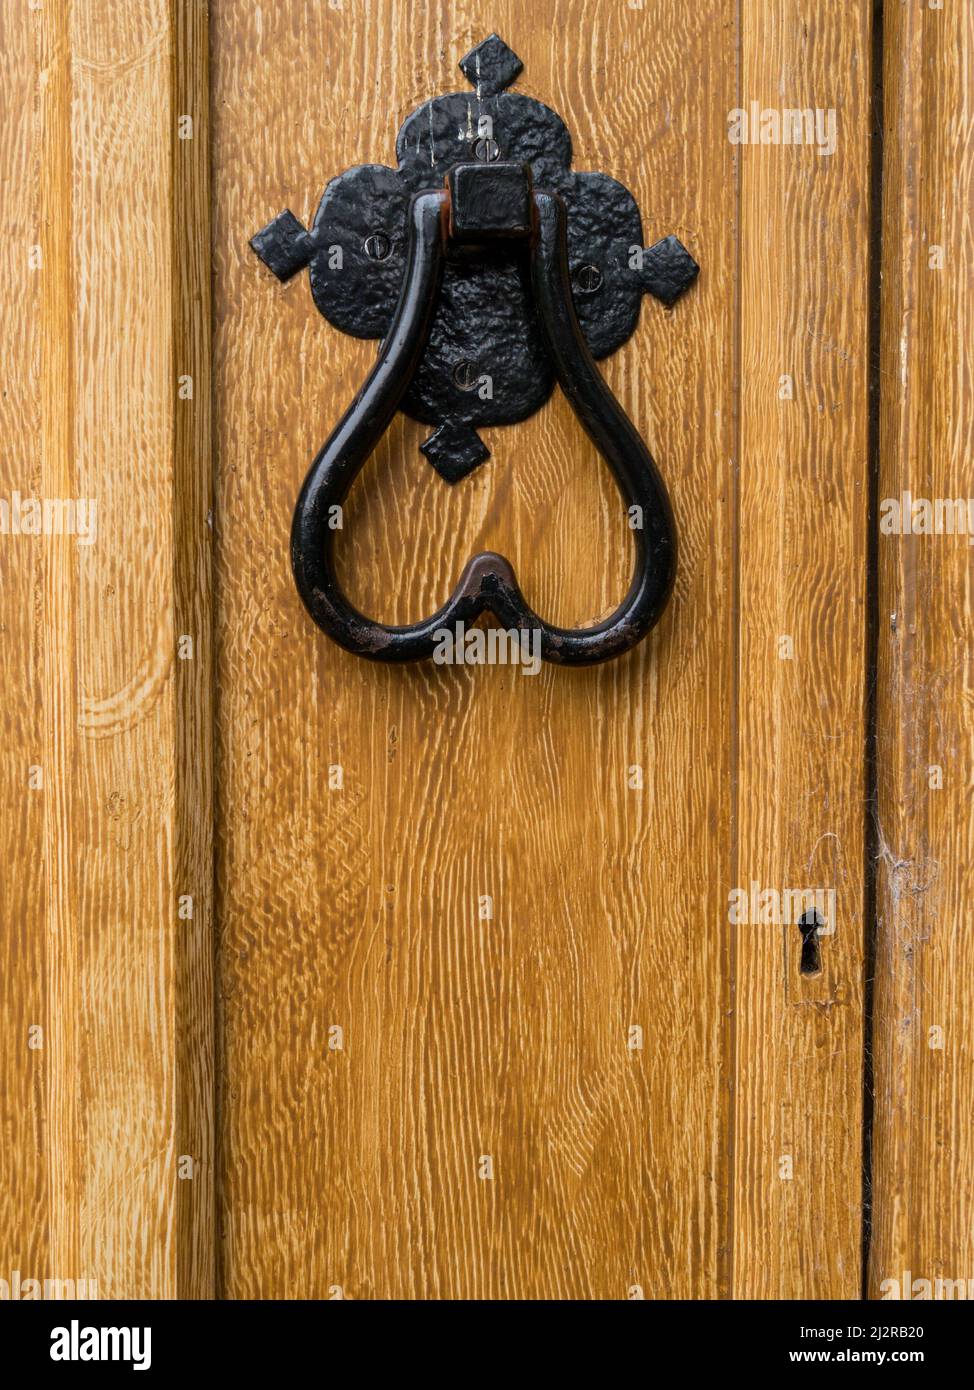 El knocker de la puerta de hierro forjado en forma de corazón pintado negro en la puerta de madera pintada con efecto de grano de madera falso marrón claro. Foto de stock